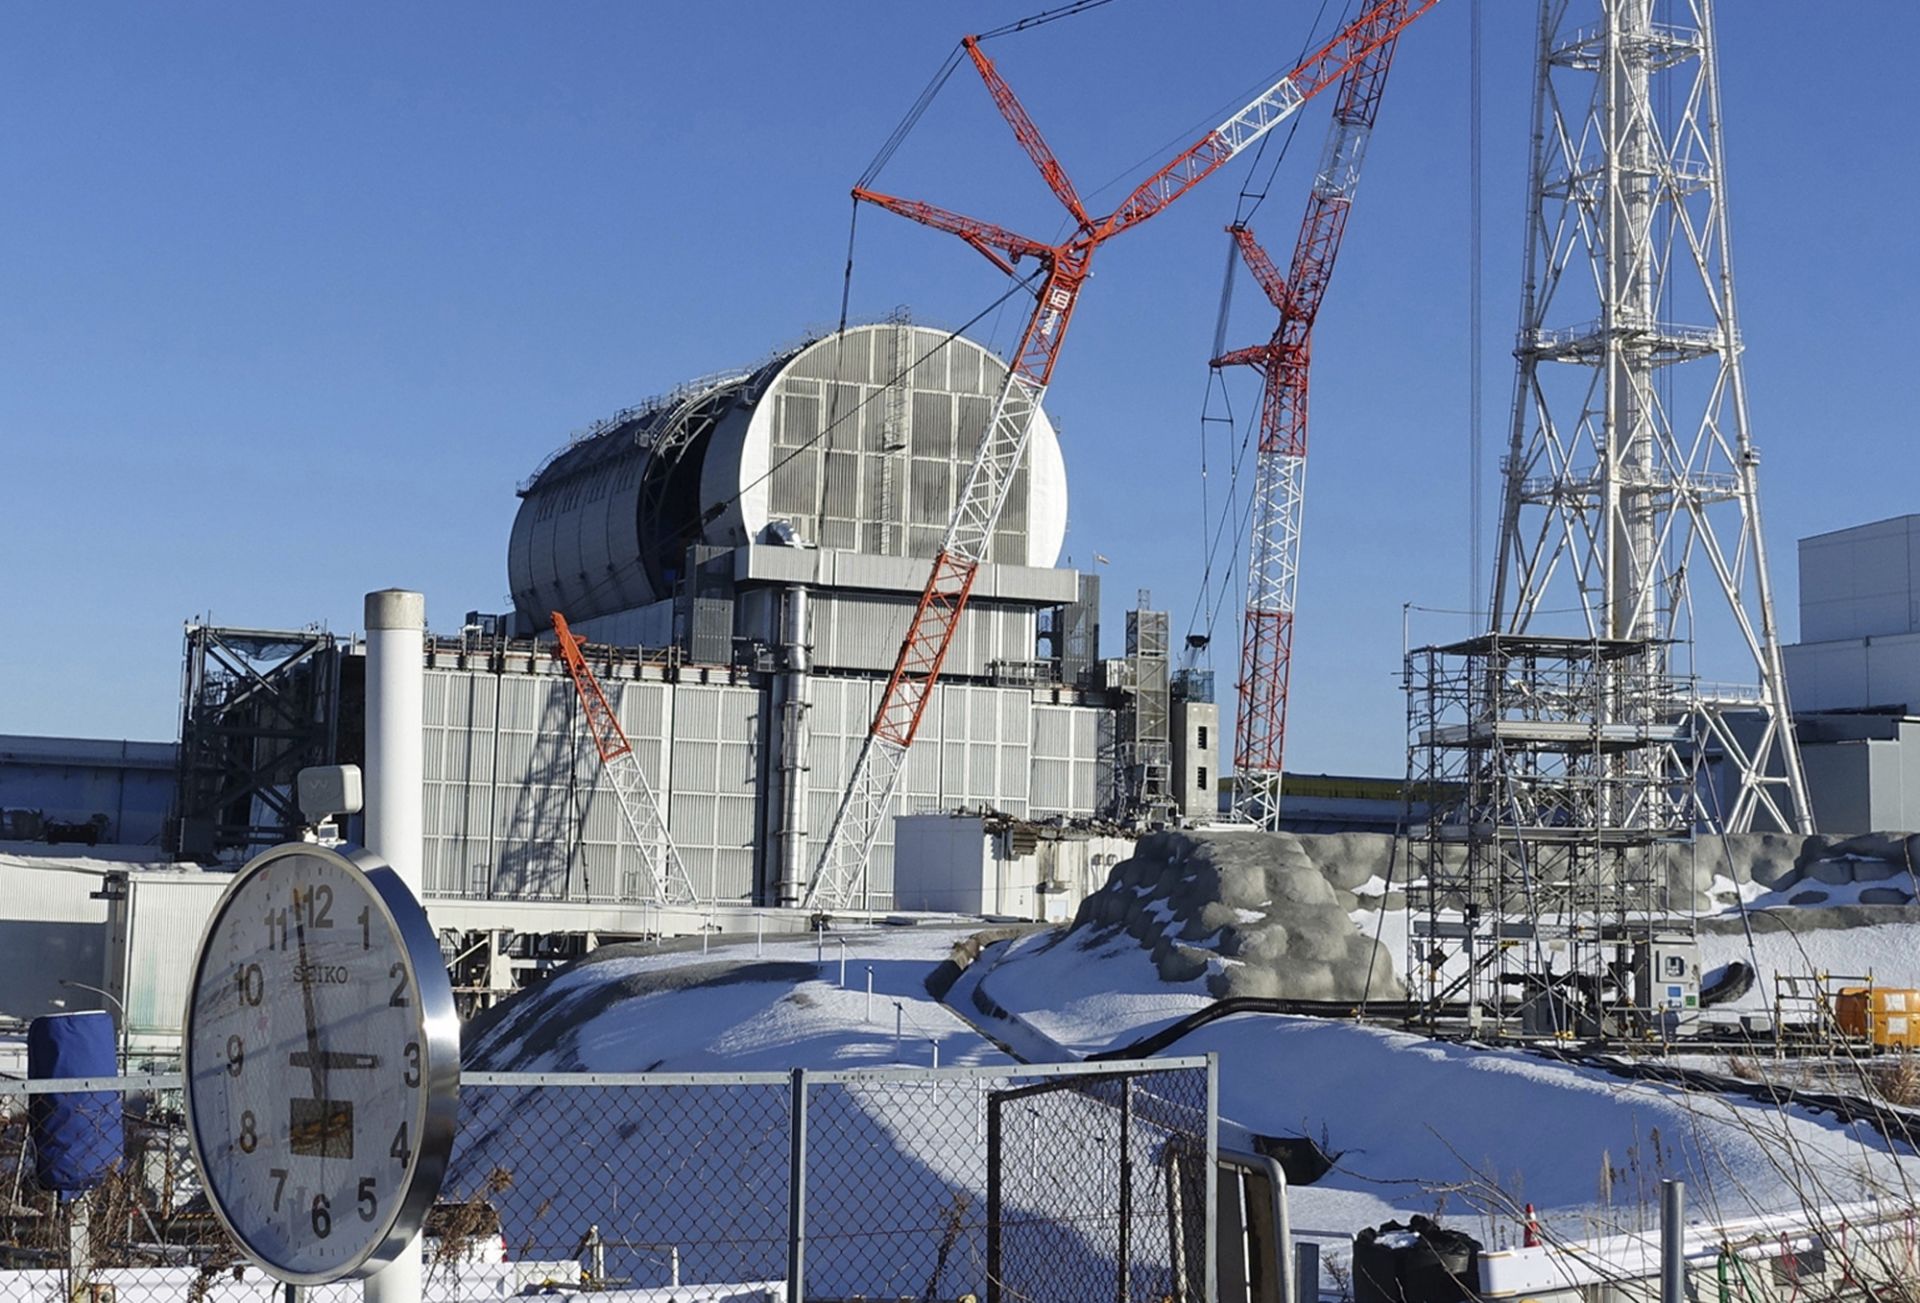 Снимка от 25 януари 2018 г. на реактора на блок 3 на атомната електроцентрала Фукушима